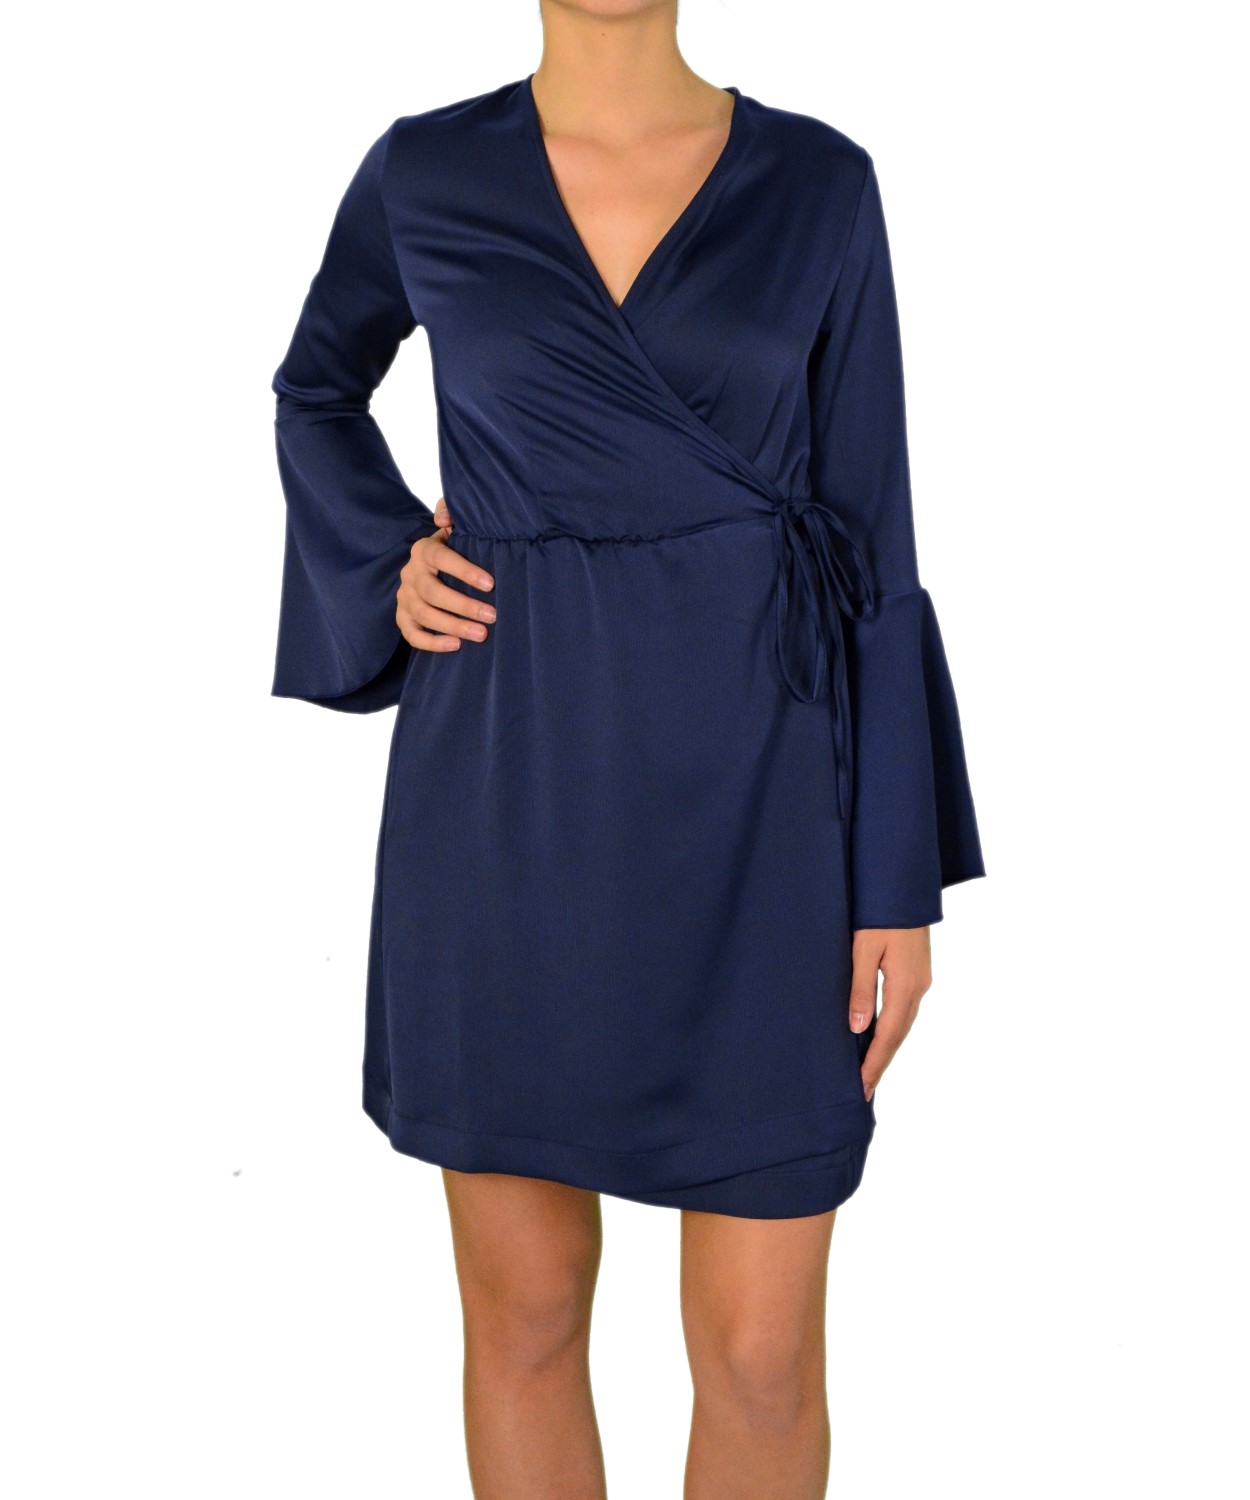 Γυναικείο φόρεμα ντραπέ με καμπάνα στο μανίκι μπλε 8112199G